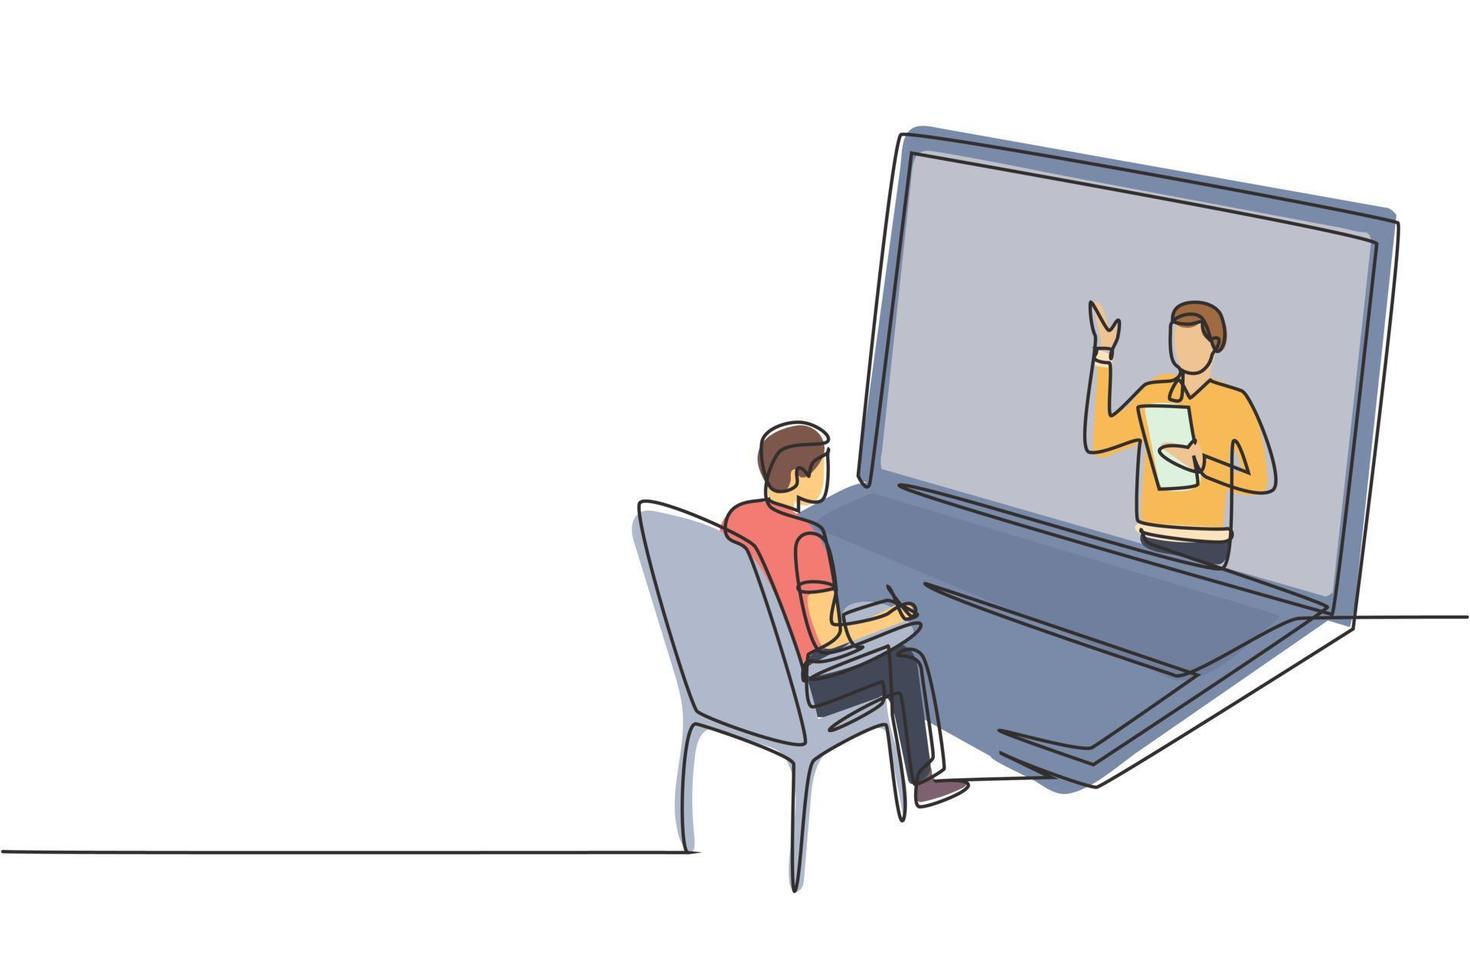 uno studente maschio che disegna una linea seduto a studiare fissando lo schermo gigante del laptop e all'interno del laptop c'è un docente maschio che sta insegnando. illustrazione vettoriale grafica di disegno di disegno di linea continua